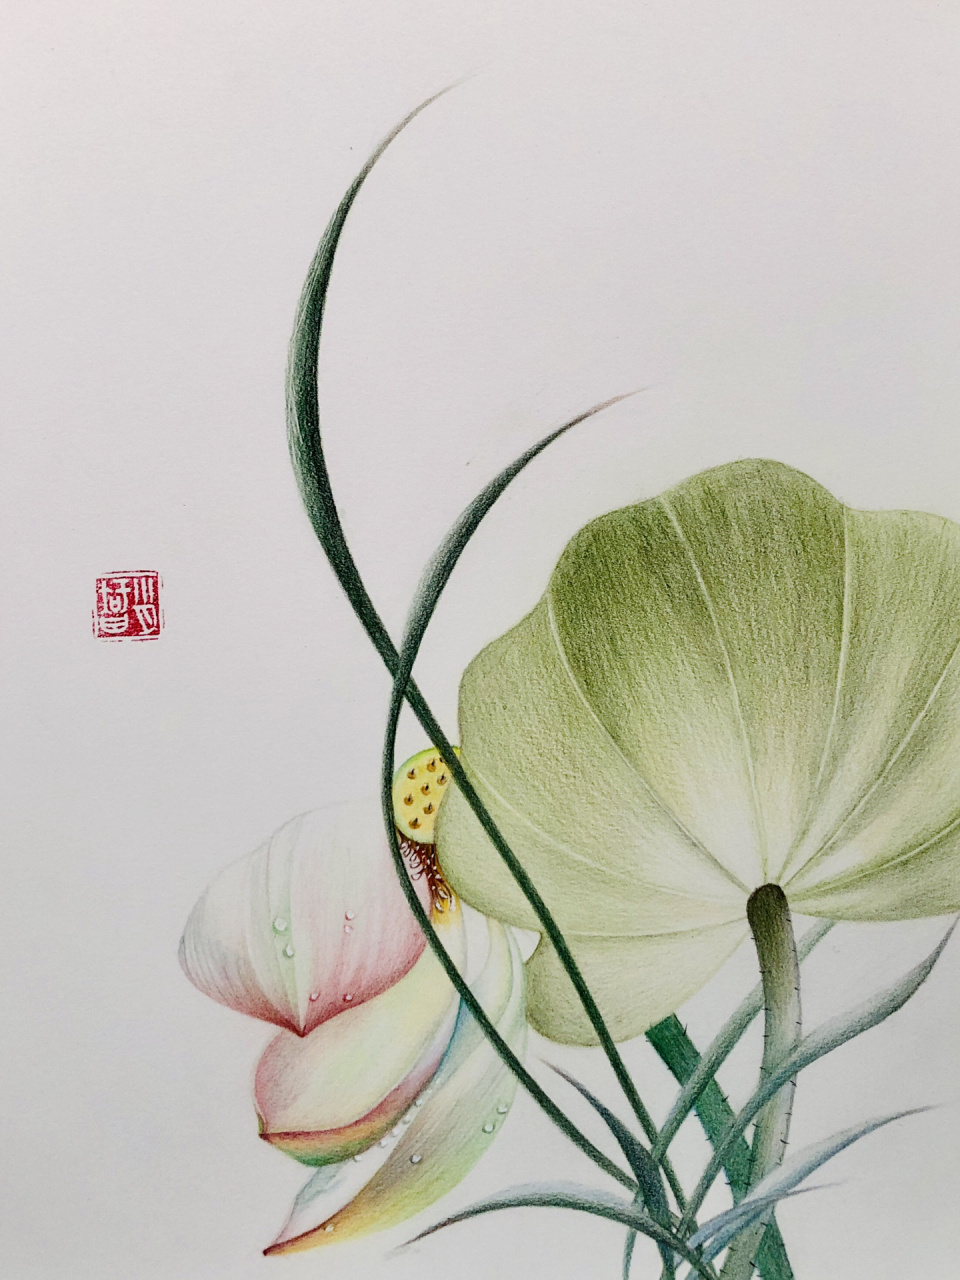 我的彩铅画304 97编号577(原创于北京樱花园),这幅比较简单,适合